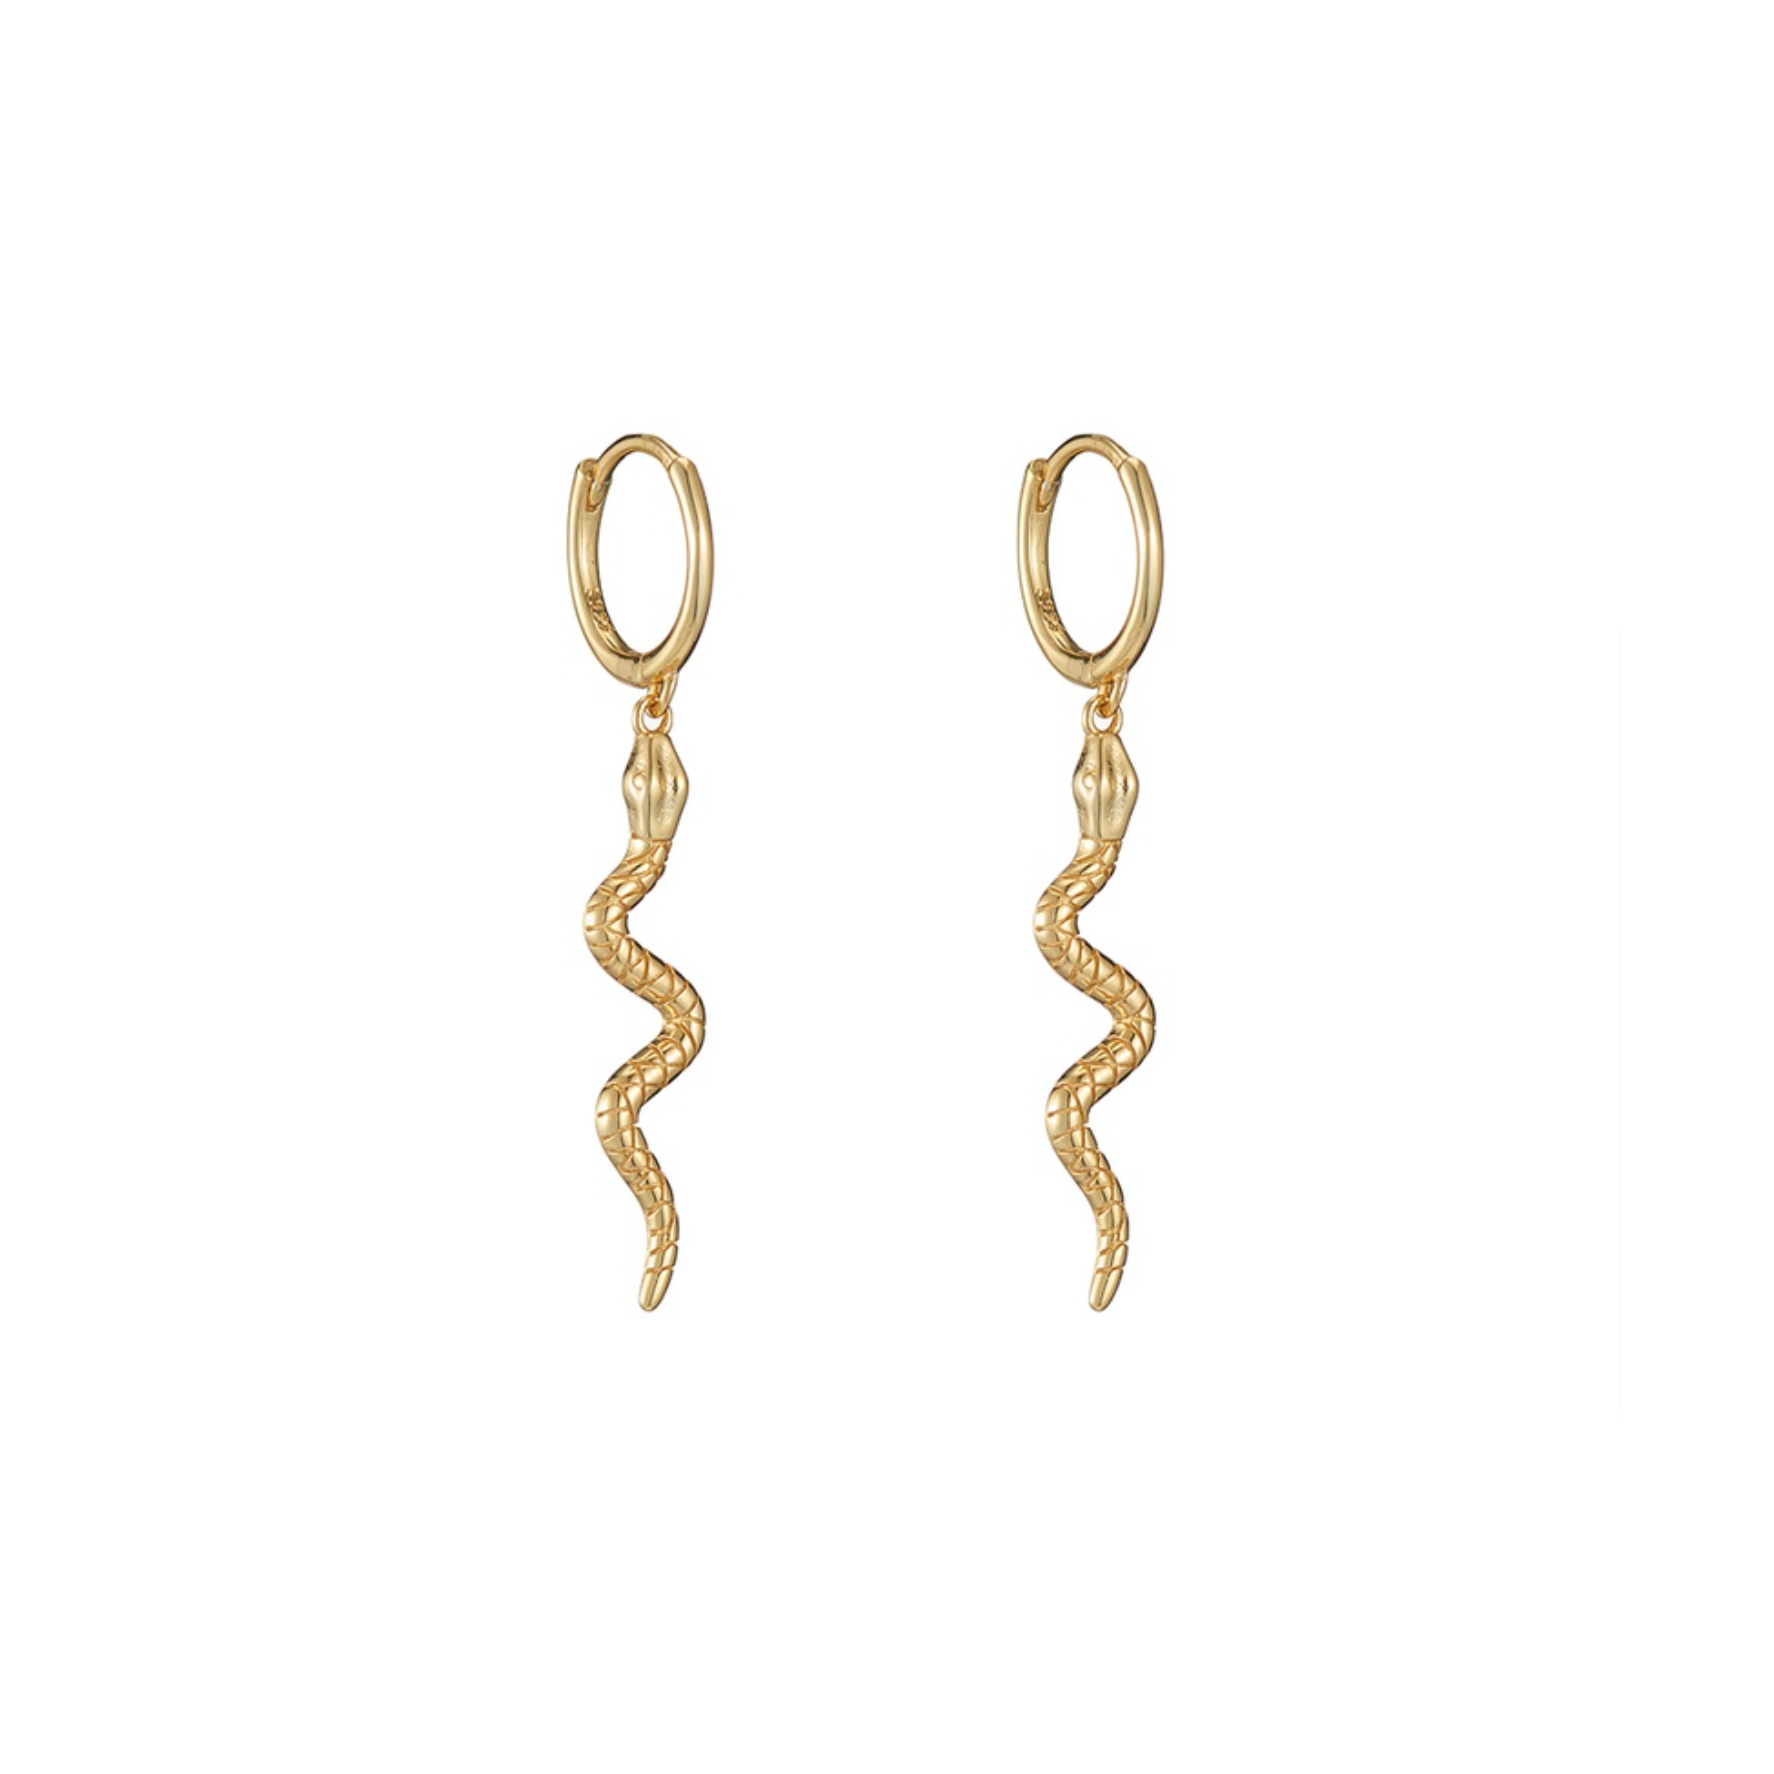 Boucles d'oreilles pendantes dorées pendent long petit serpent. Détails produit : Couleur or. Métal doré. Pendentif long petit serpent.